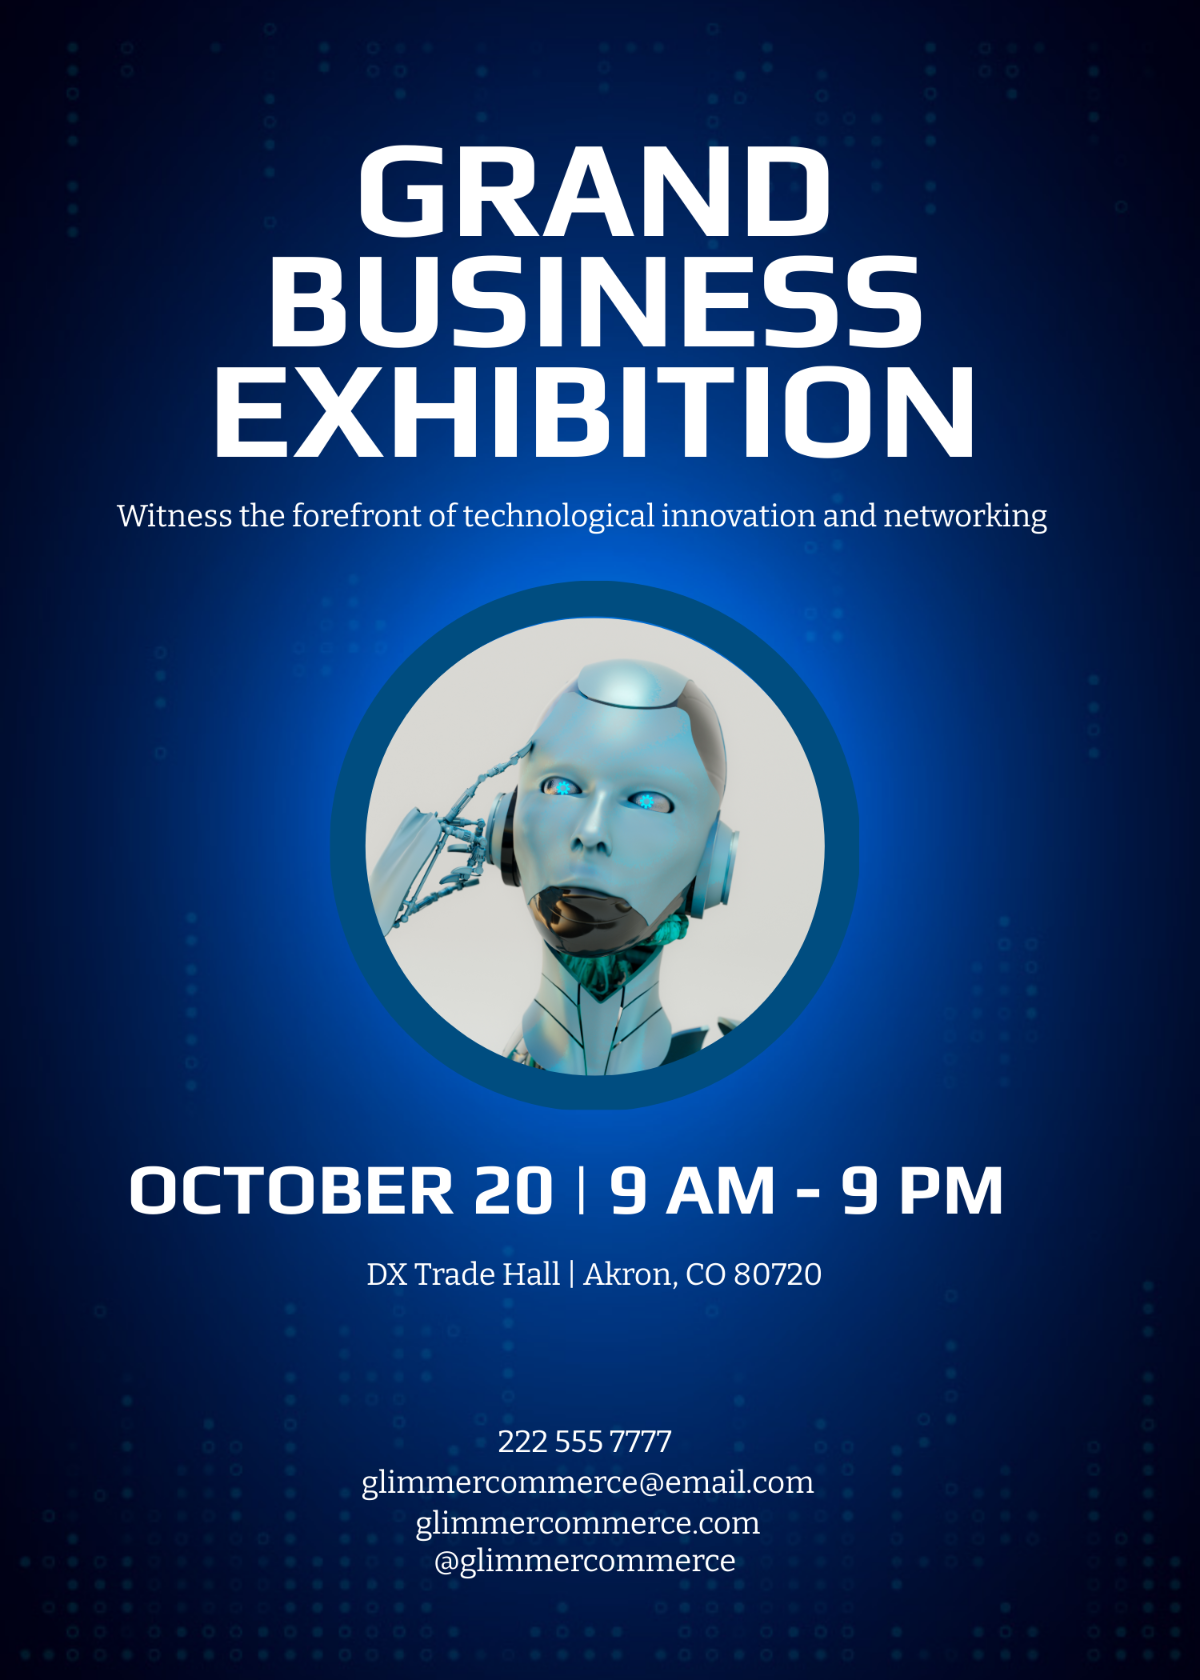 Business Exhibition Invitation